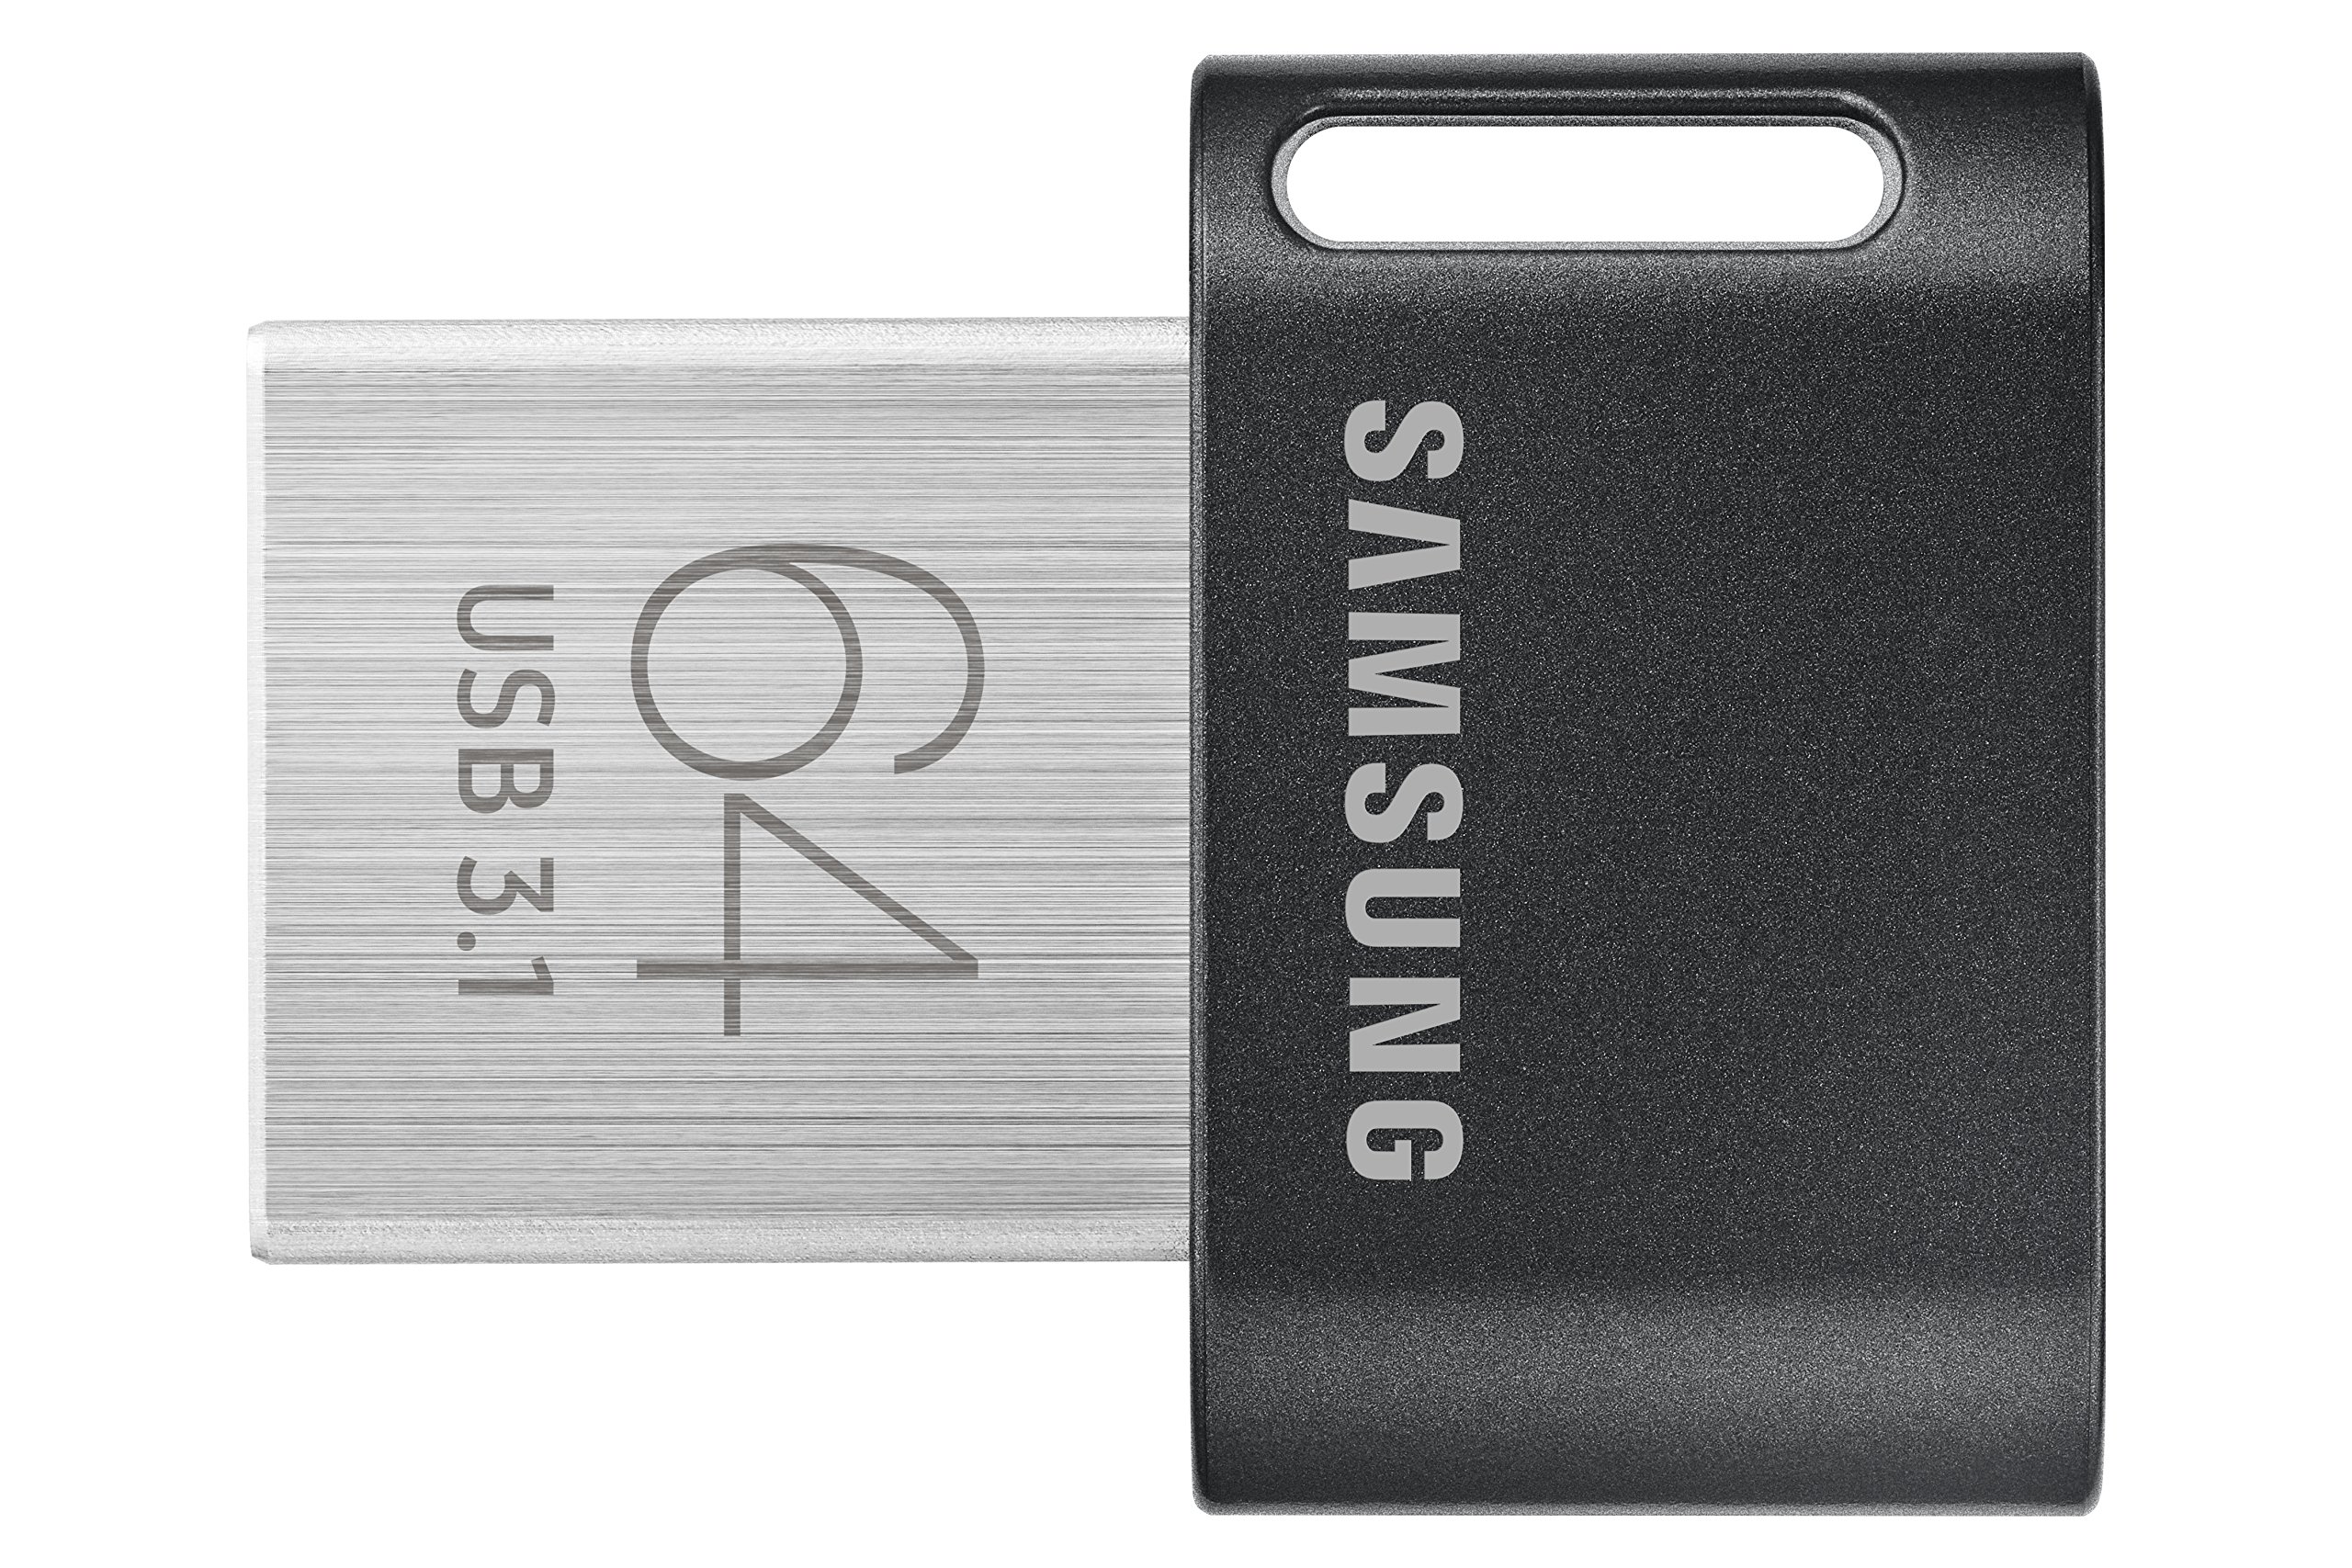 SAMSUNG MUF-64AB/AM FIT Plus 64GB - 300MB/s USB 3.1 Flash Drive, Black/Sliver